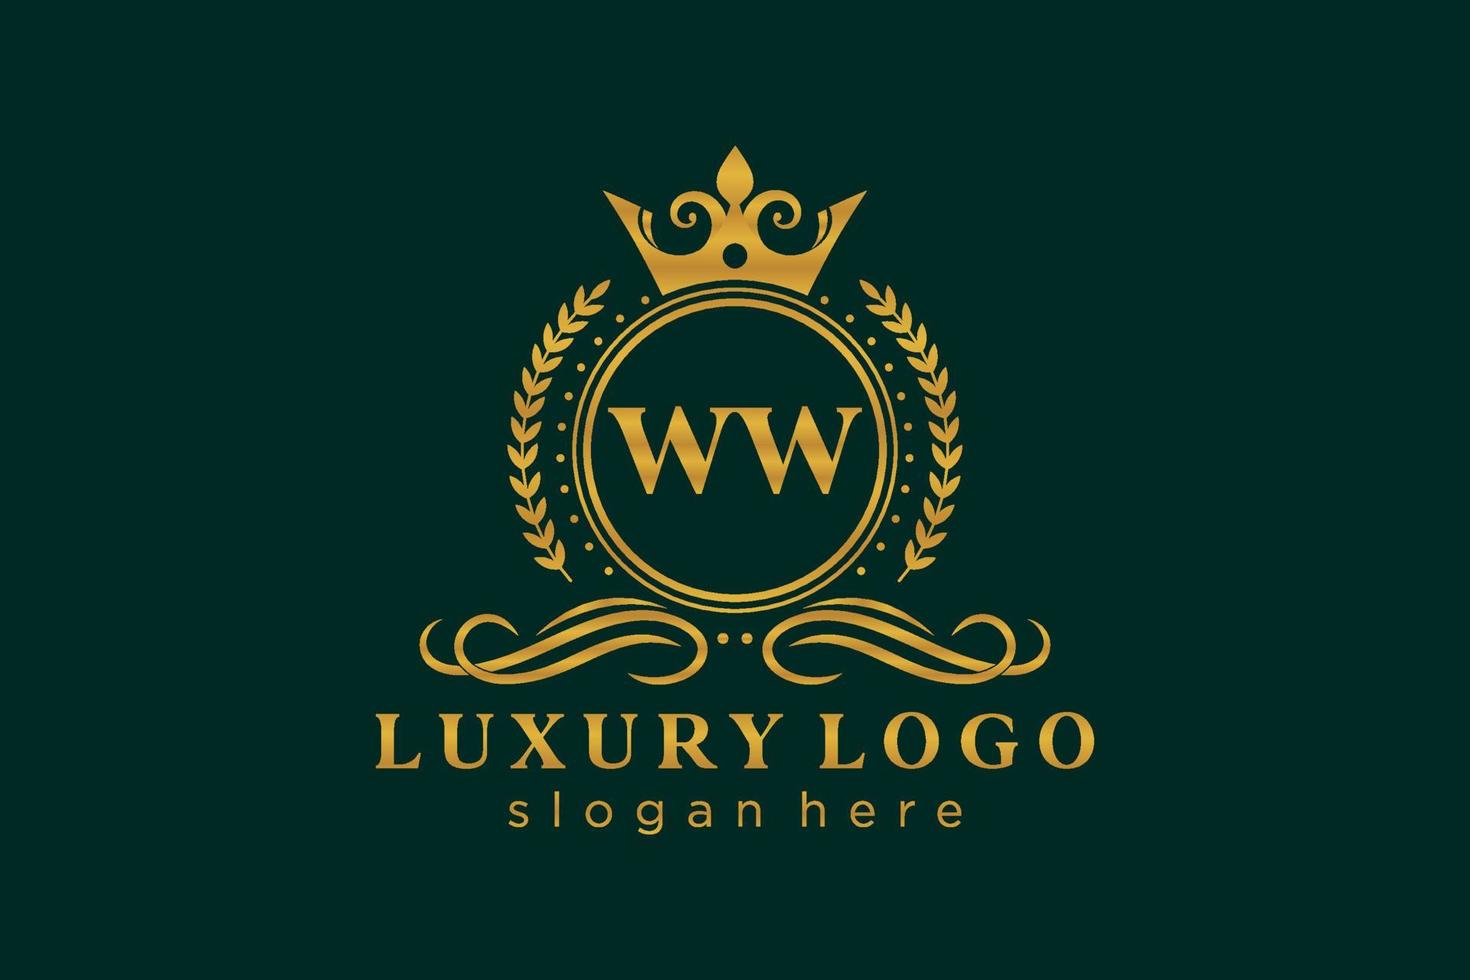 königliche Luxus-Logo-Vorlage mit anfänglichem ww-Buchstaben in Vektorgrafiken für Restaurant, Lizenzgebühren, Boutique, Café, Hotel, heraldisch, Schmuck, Mode und andere Vektorillustrationen. vektor